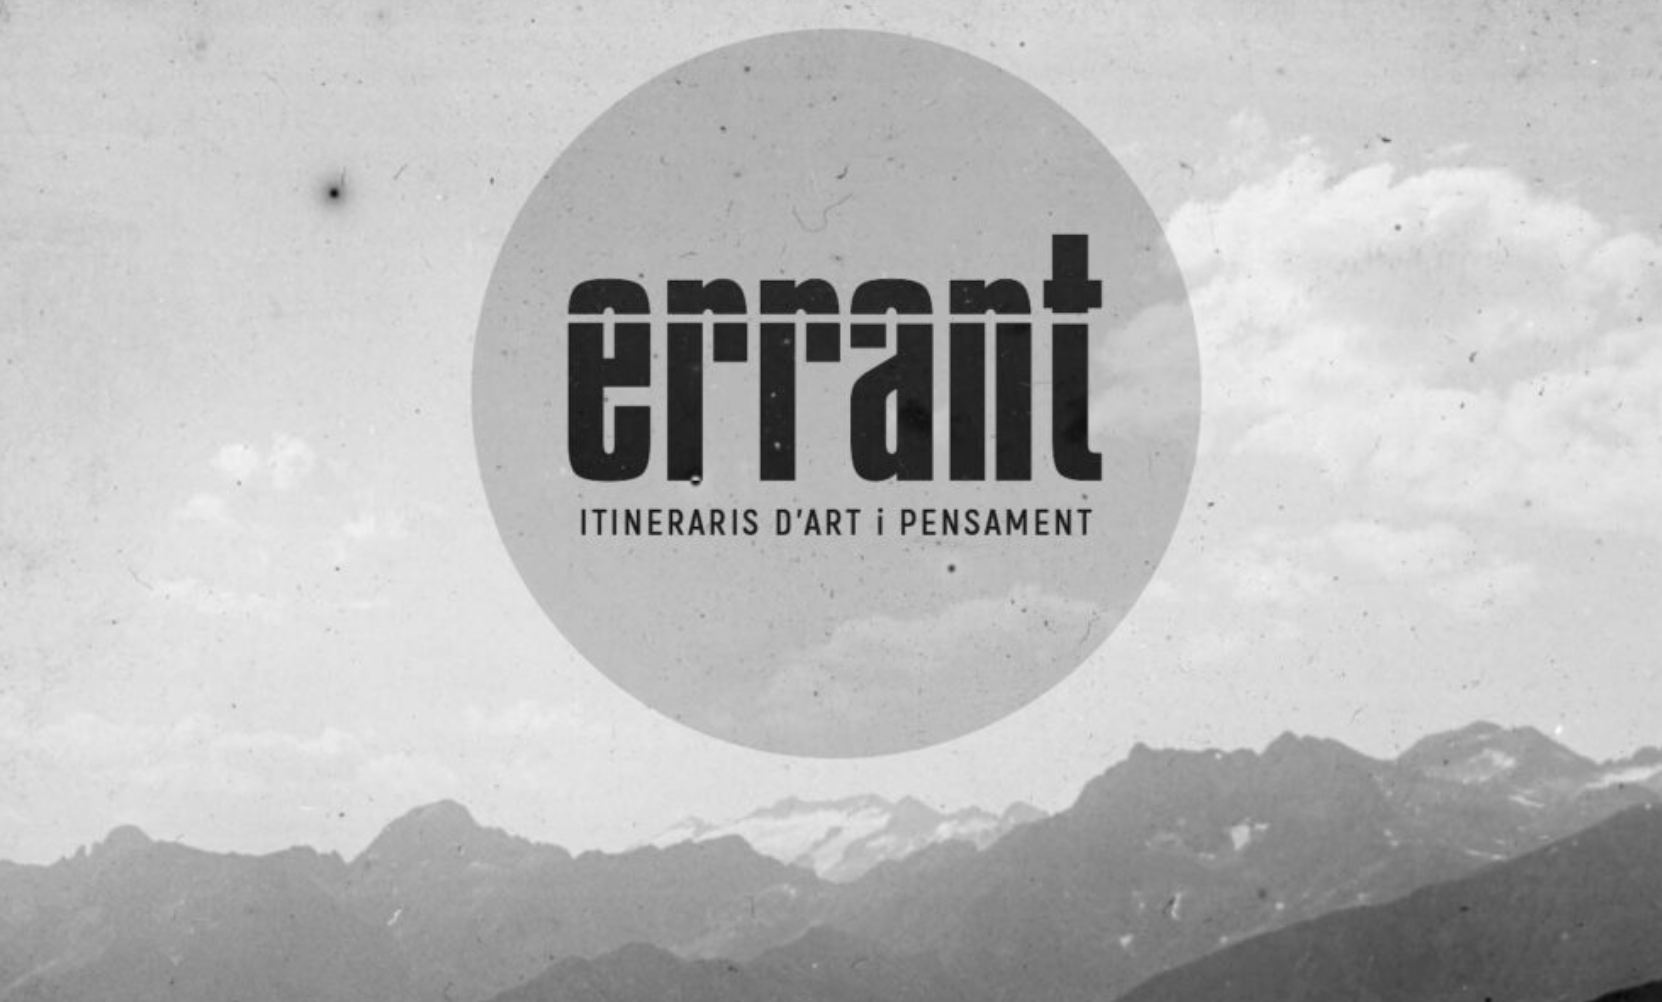 Neix “ERRANT” un festival d’art experimental i diàlegs radicals que itinera per les comarques de Lleida